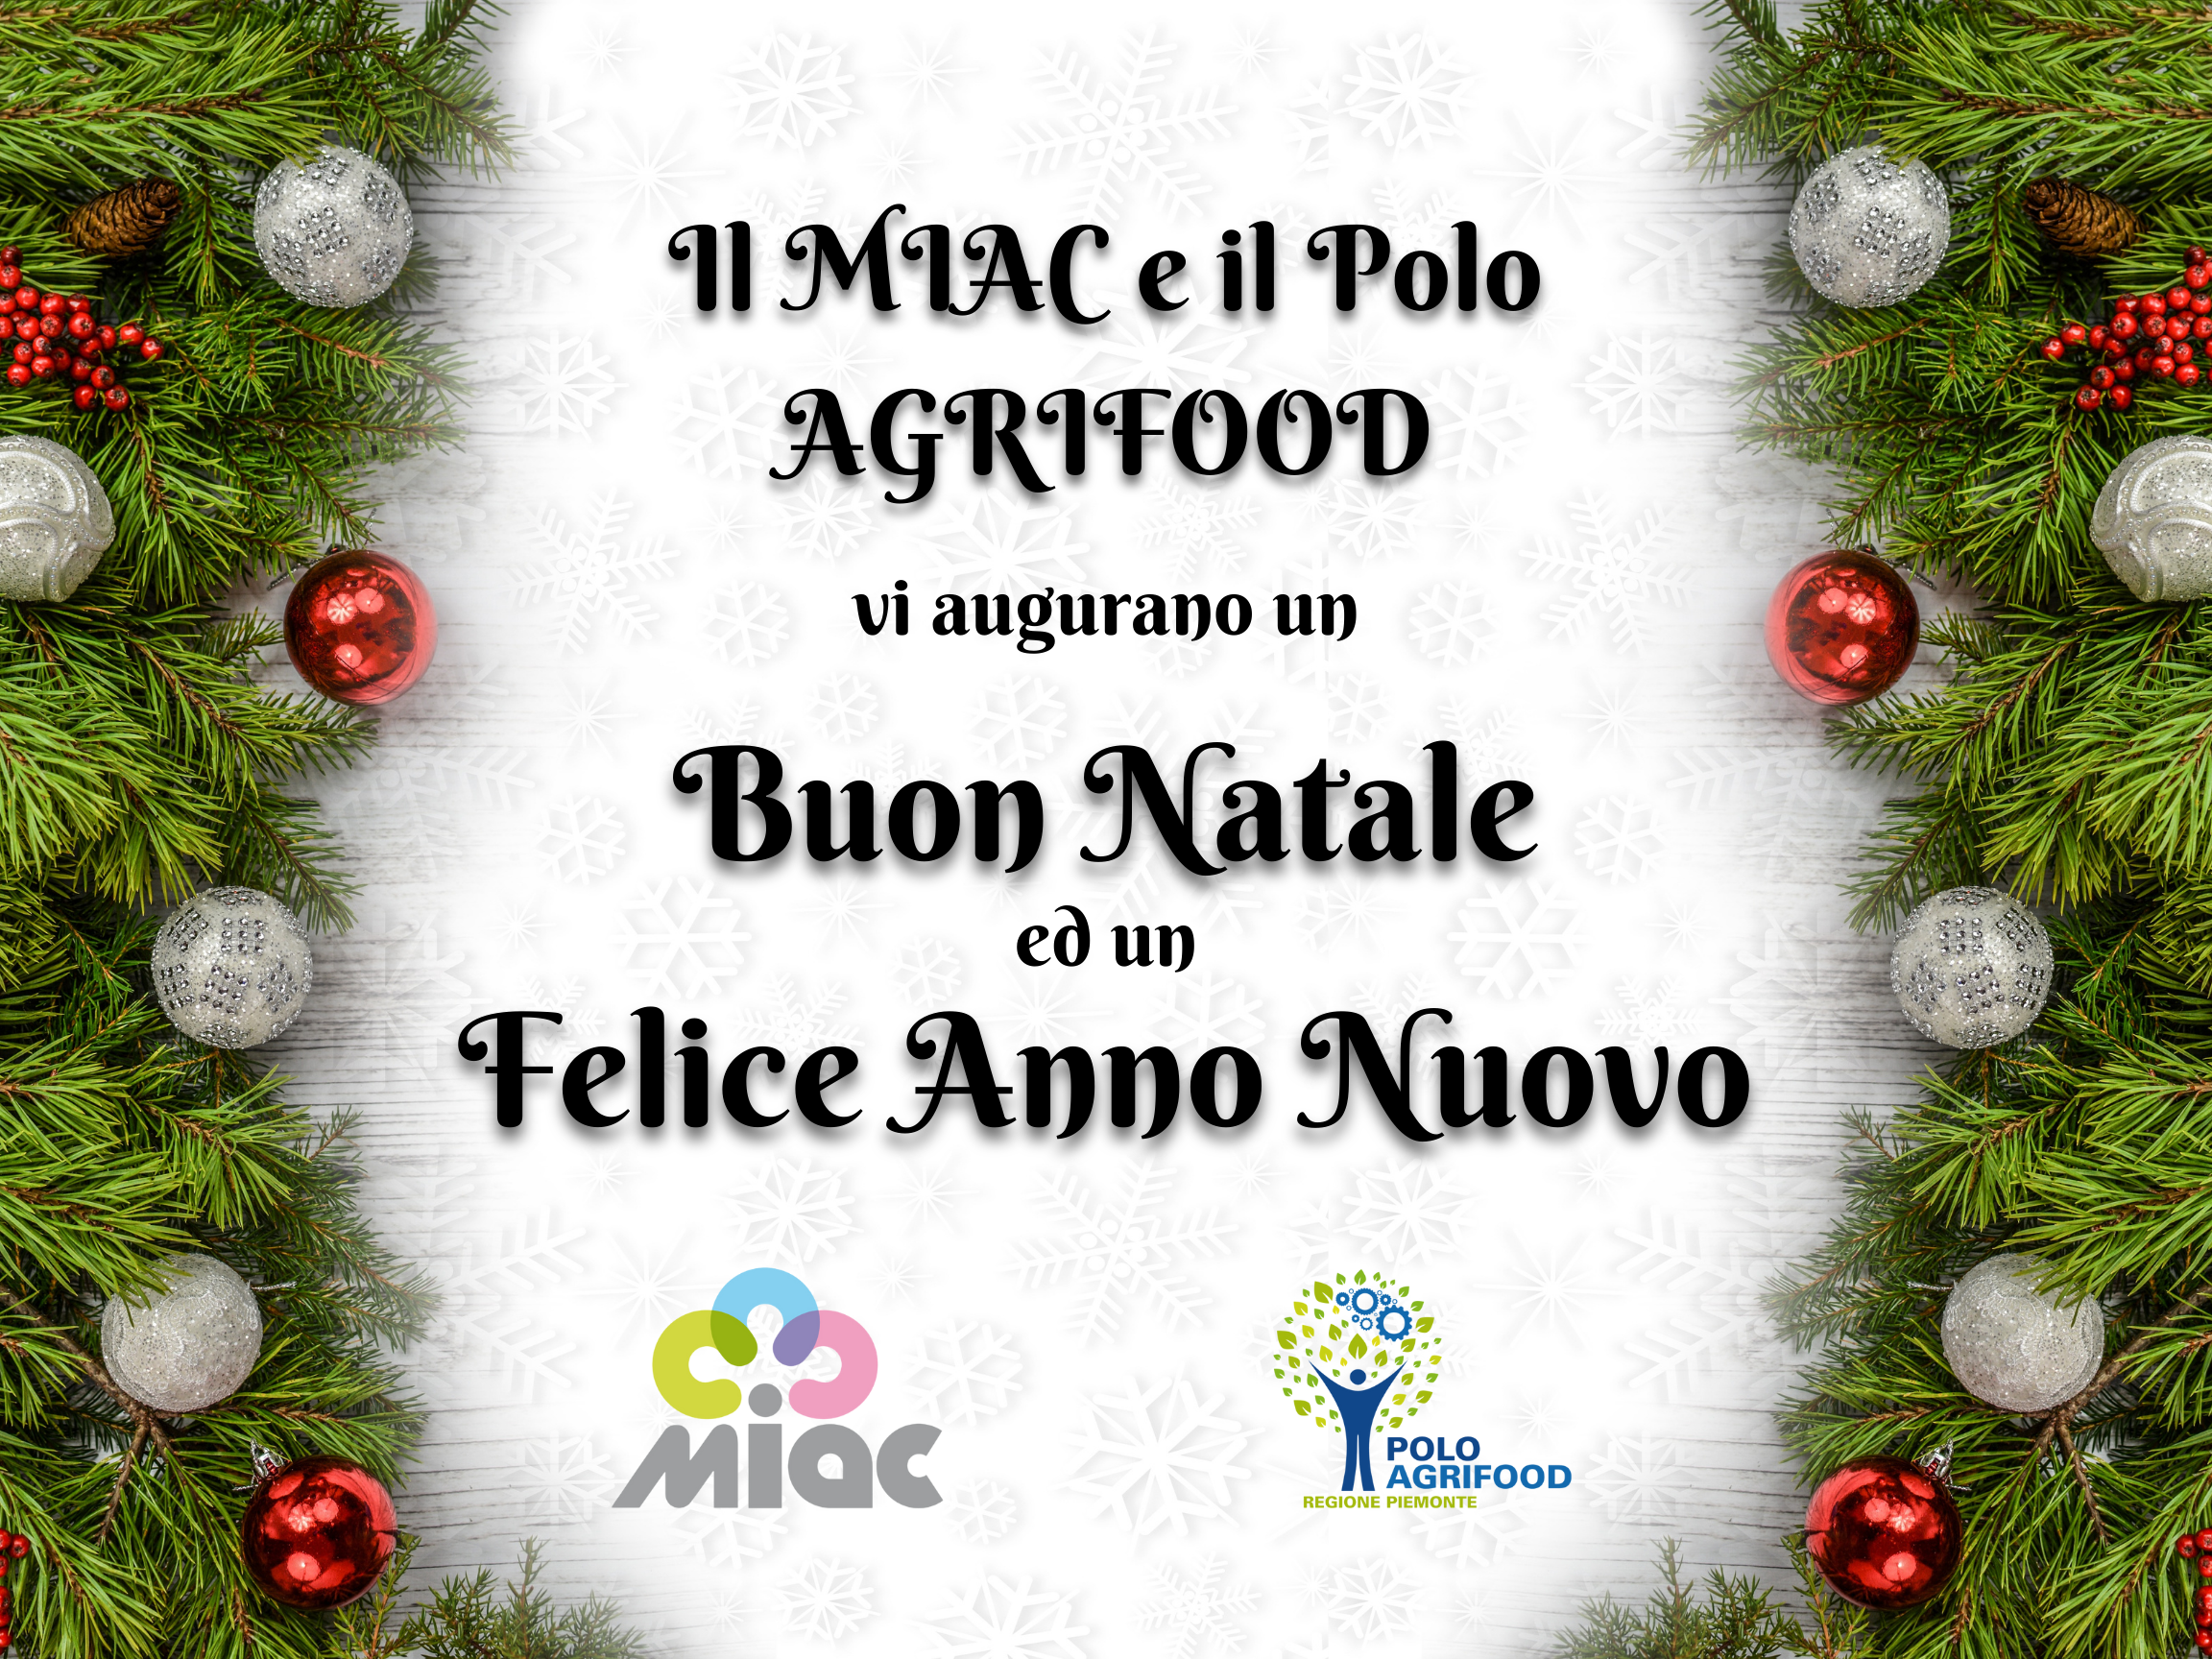 Lo staff di MIAC-Polo AGRIFOOD vi augura Buon Natale